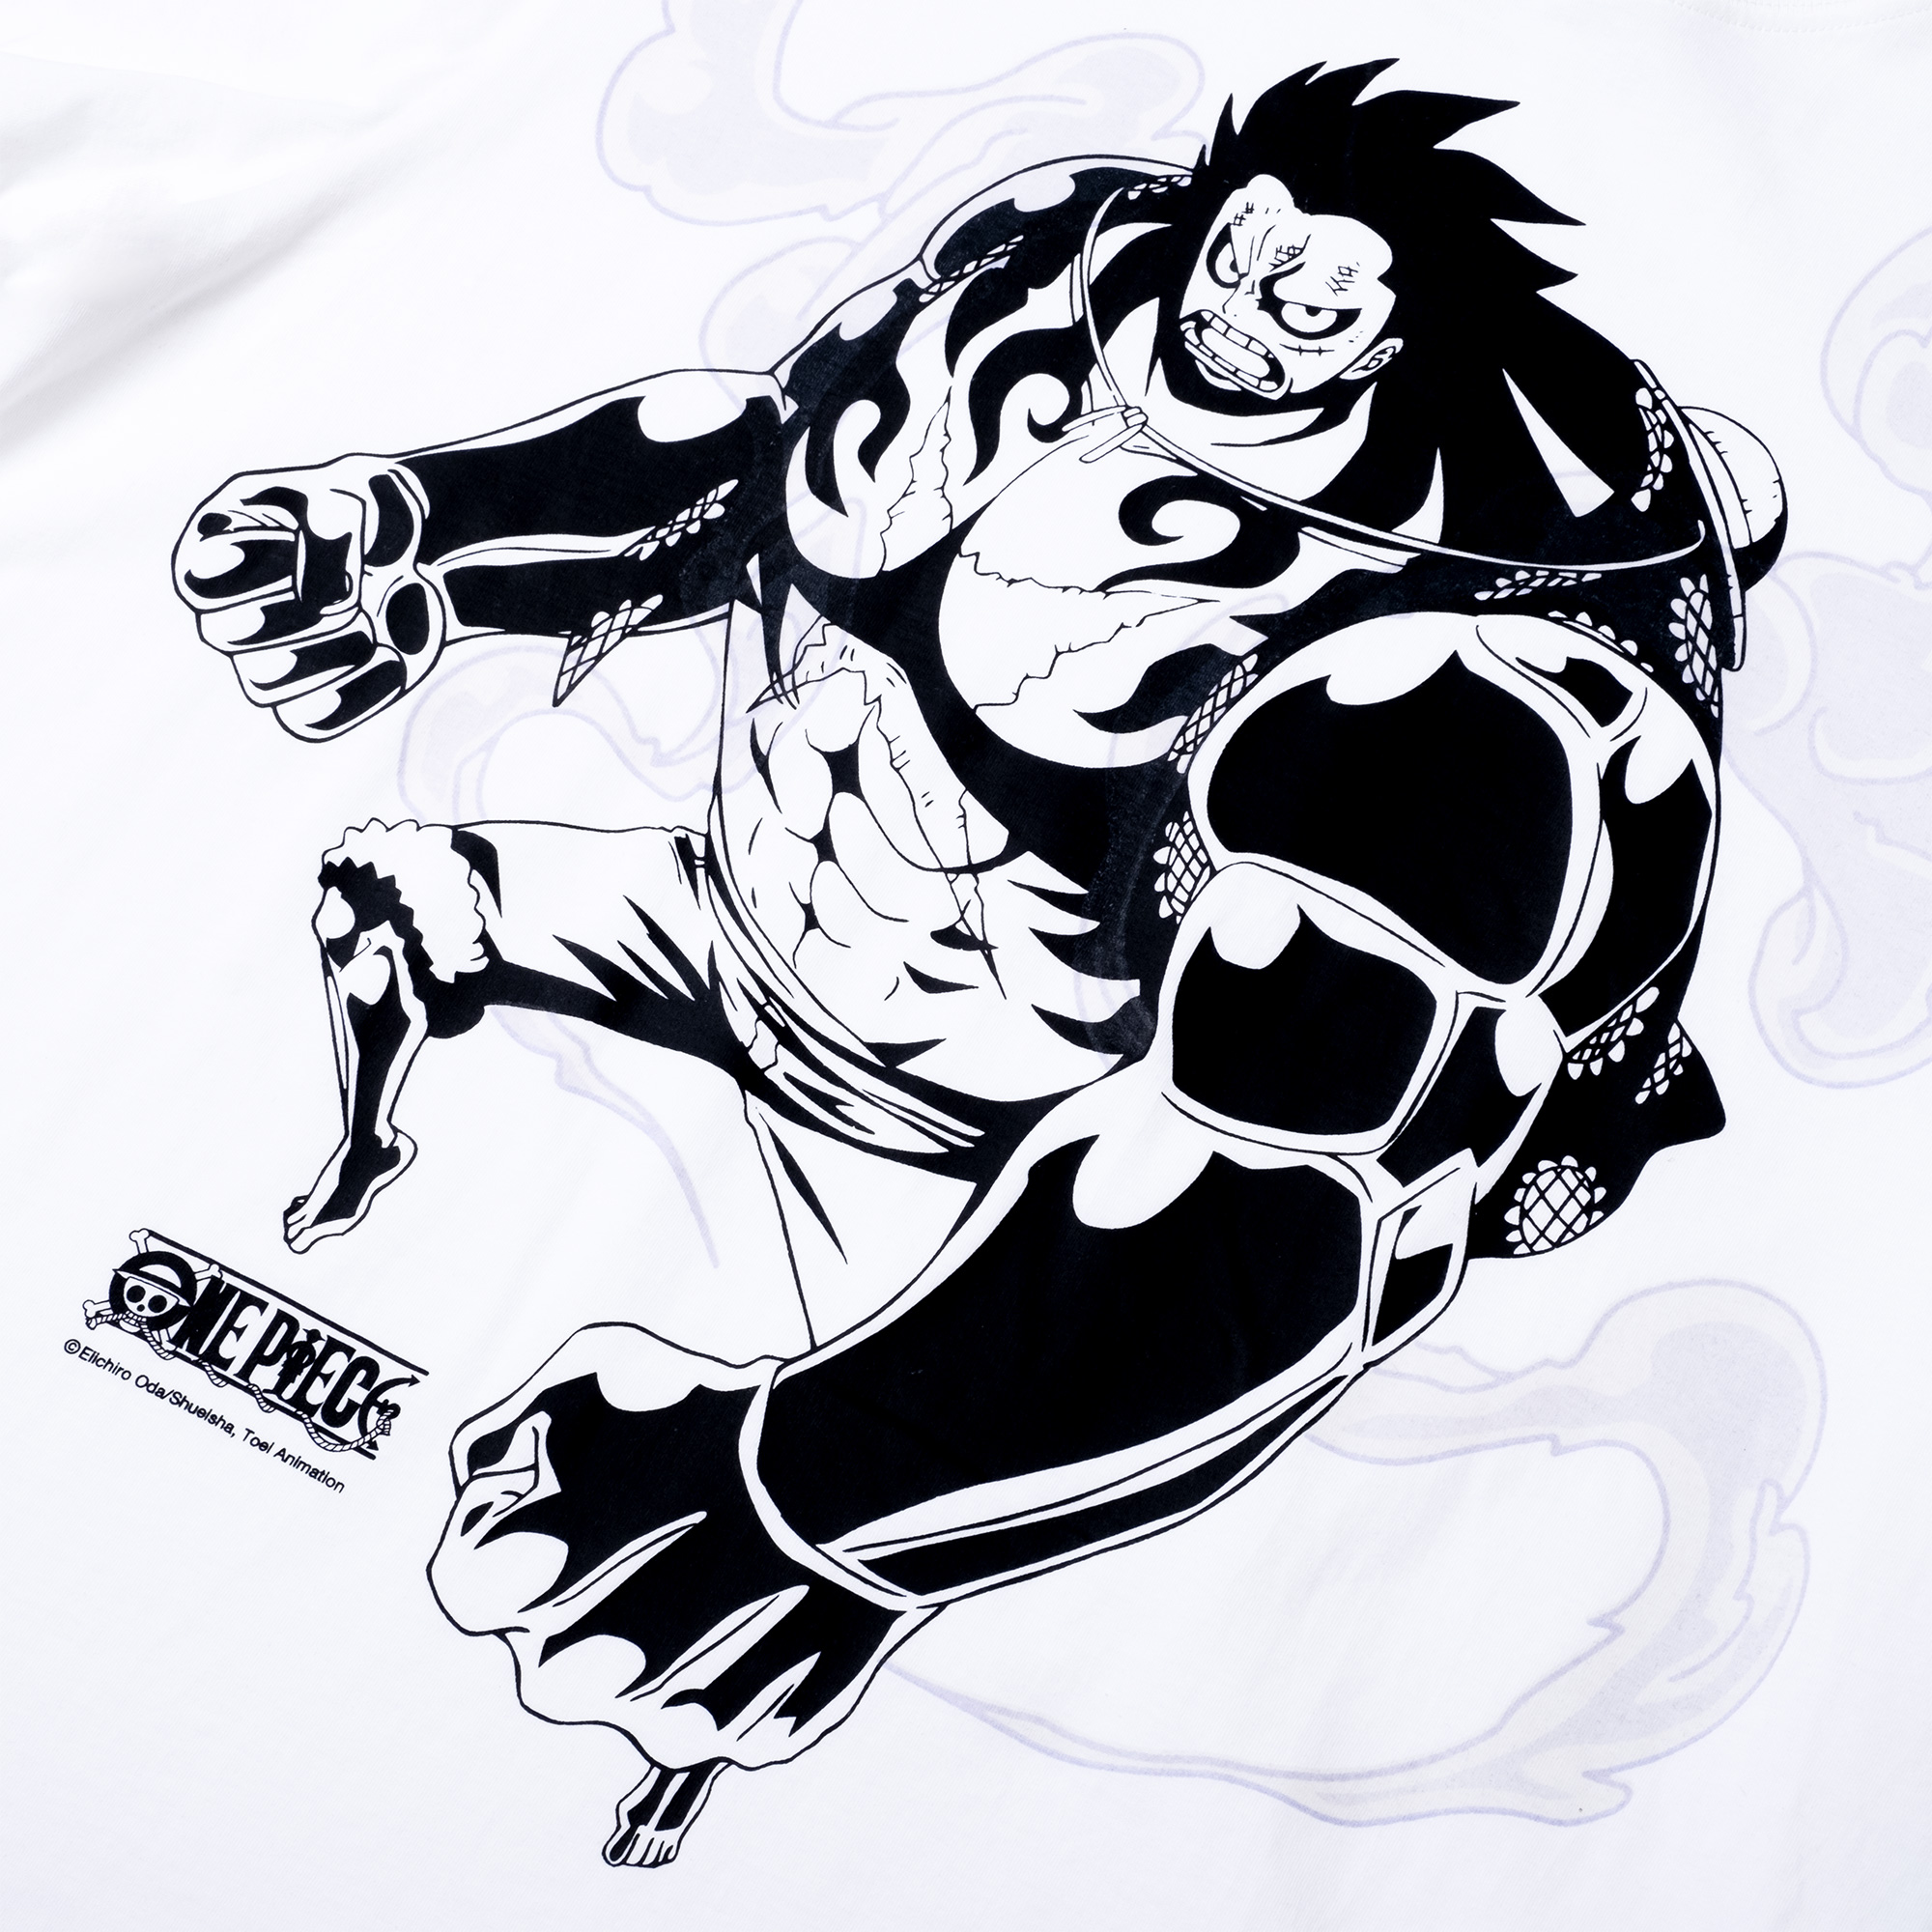 DC x OP Gear 4 T-shirt - White